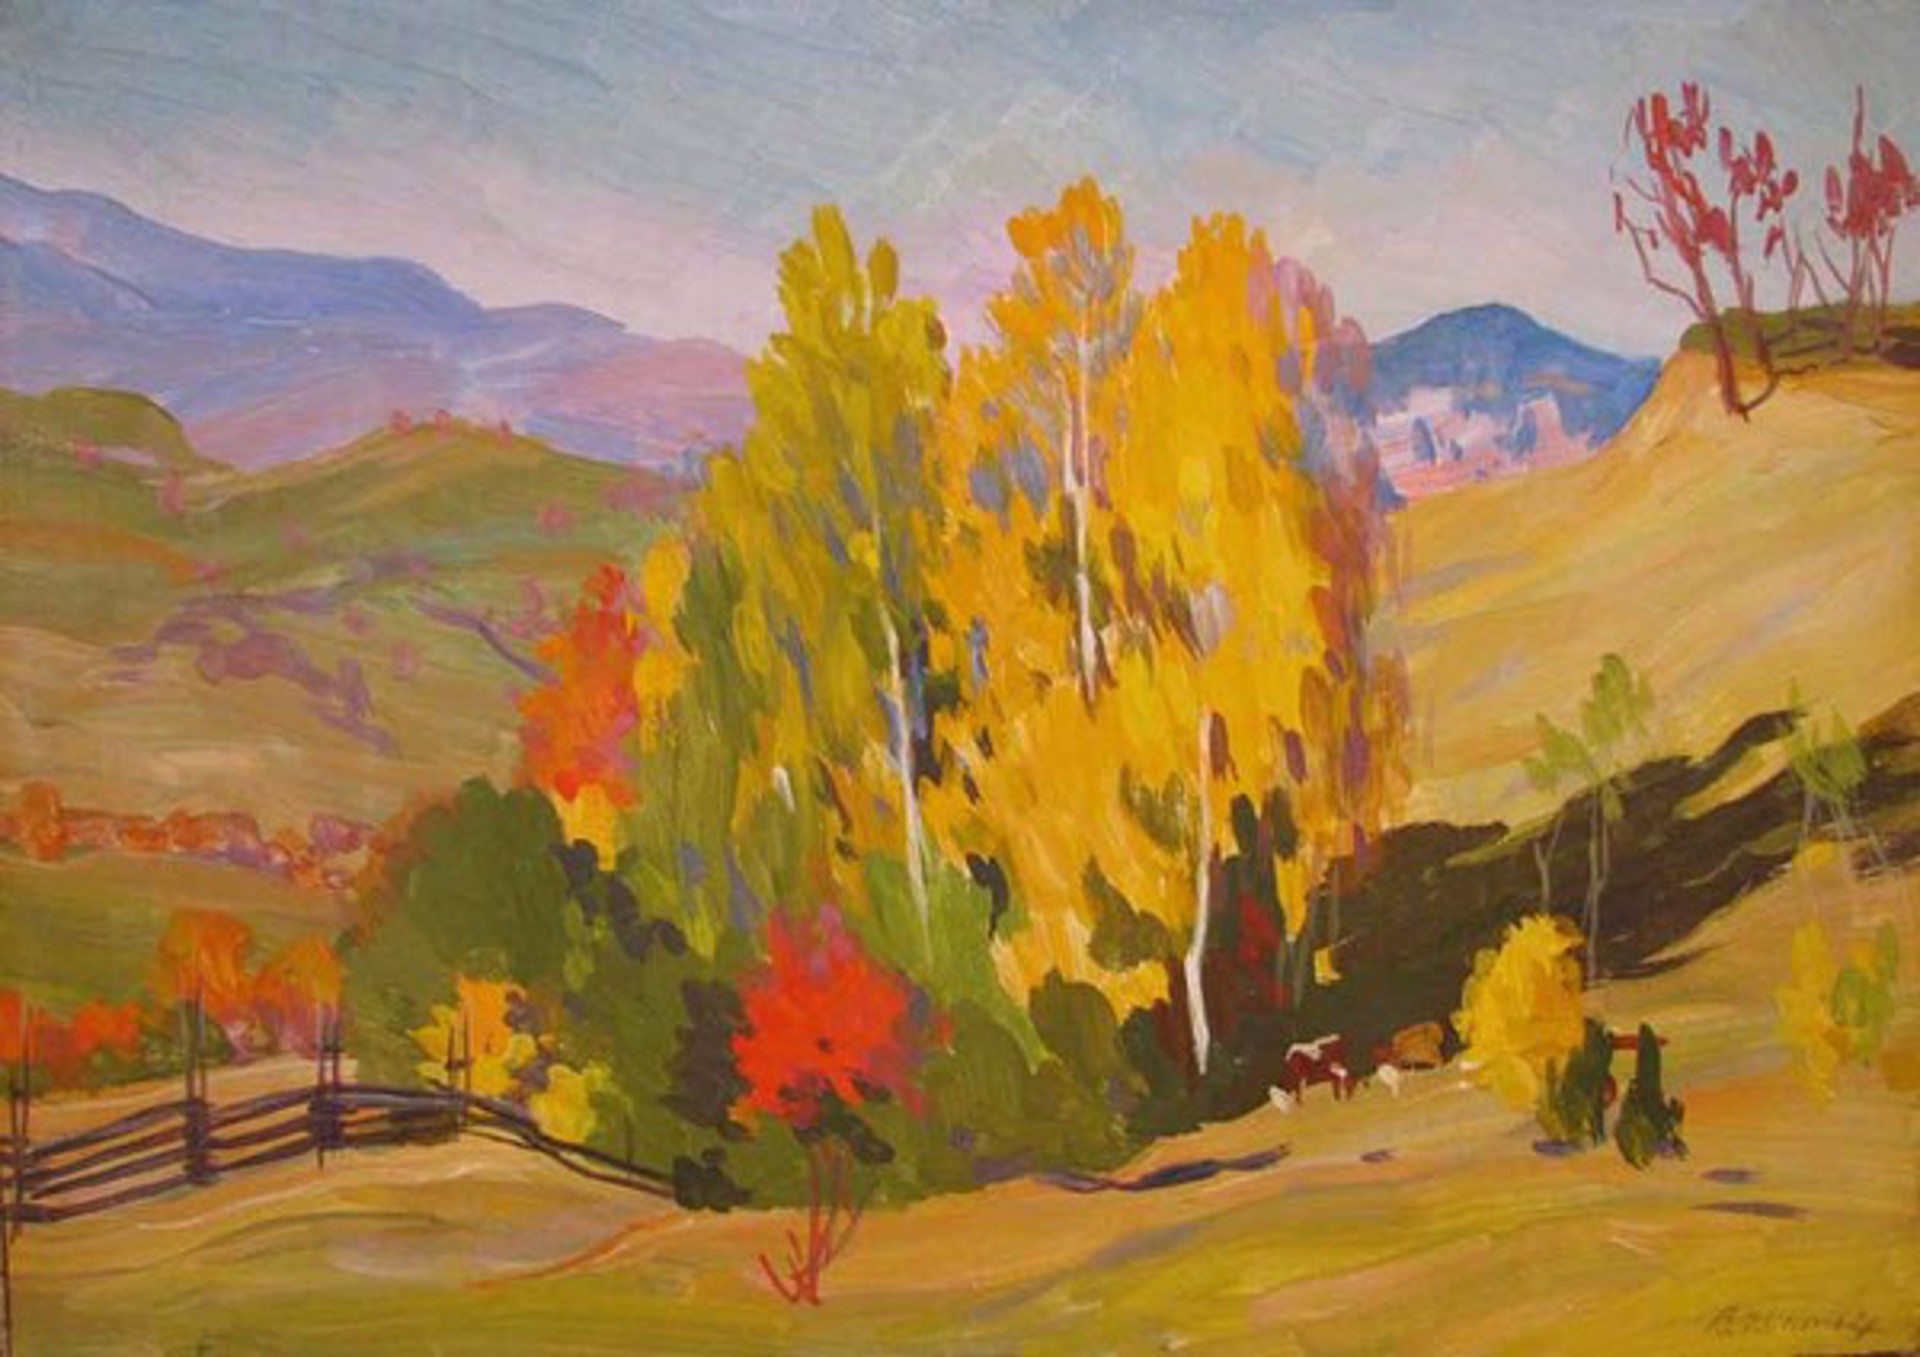 Pasture in Autumn by Vladimir Masik